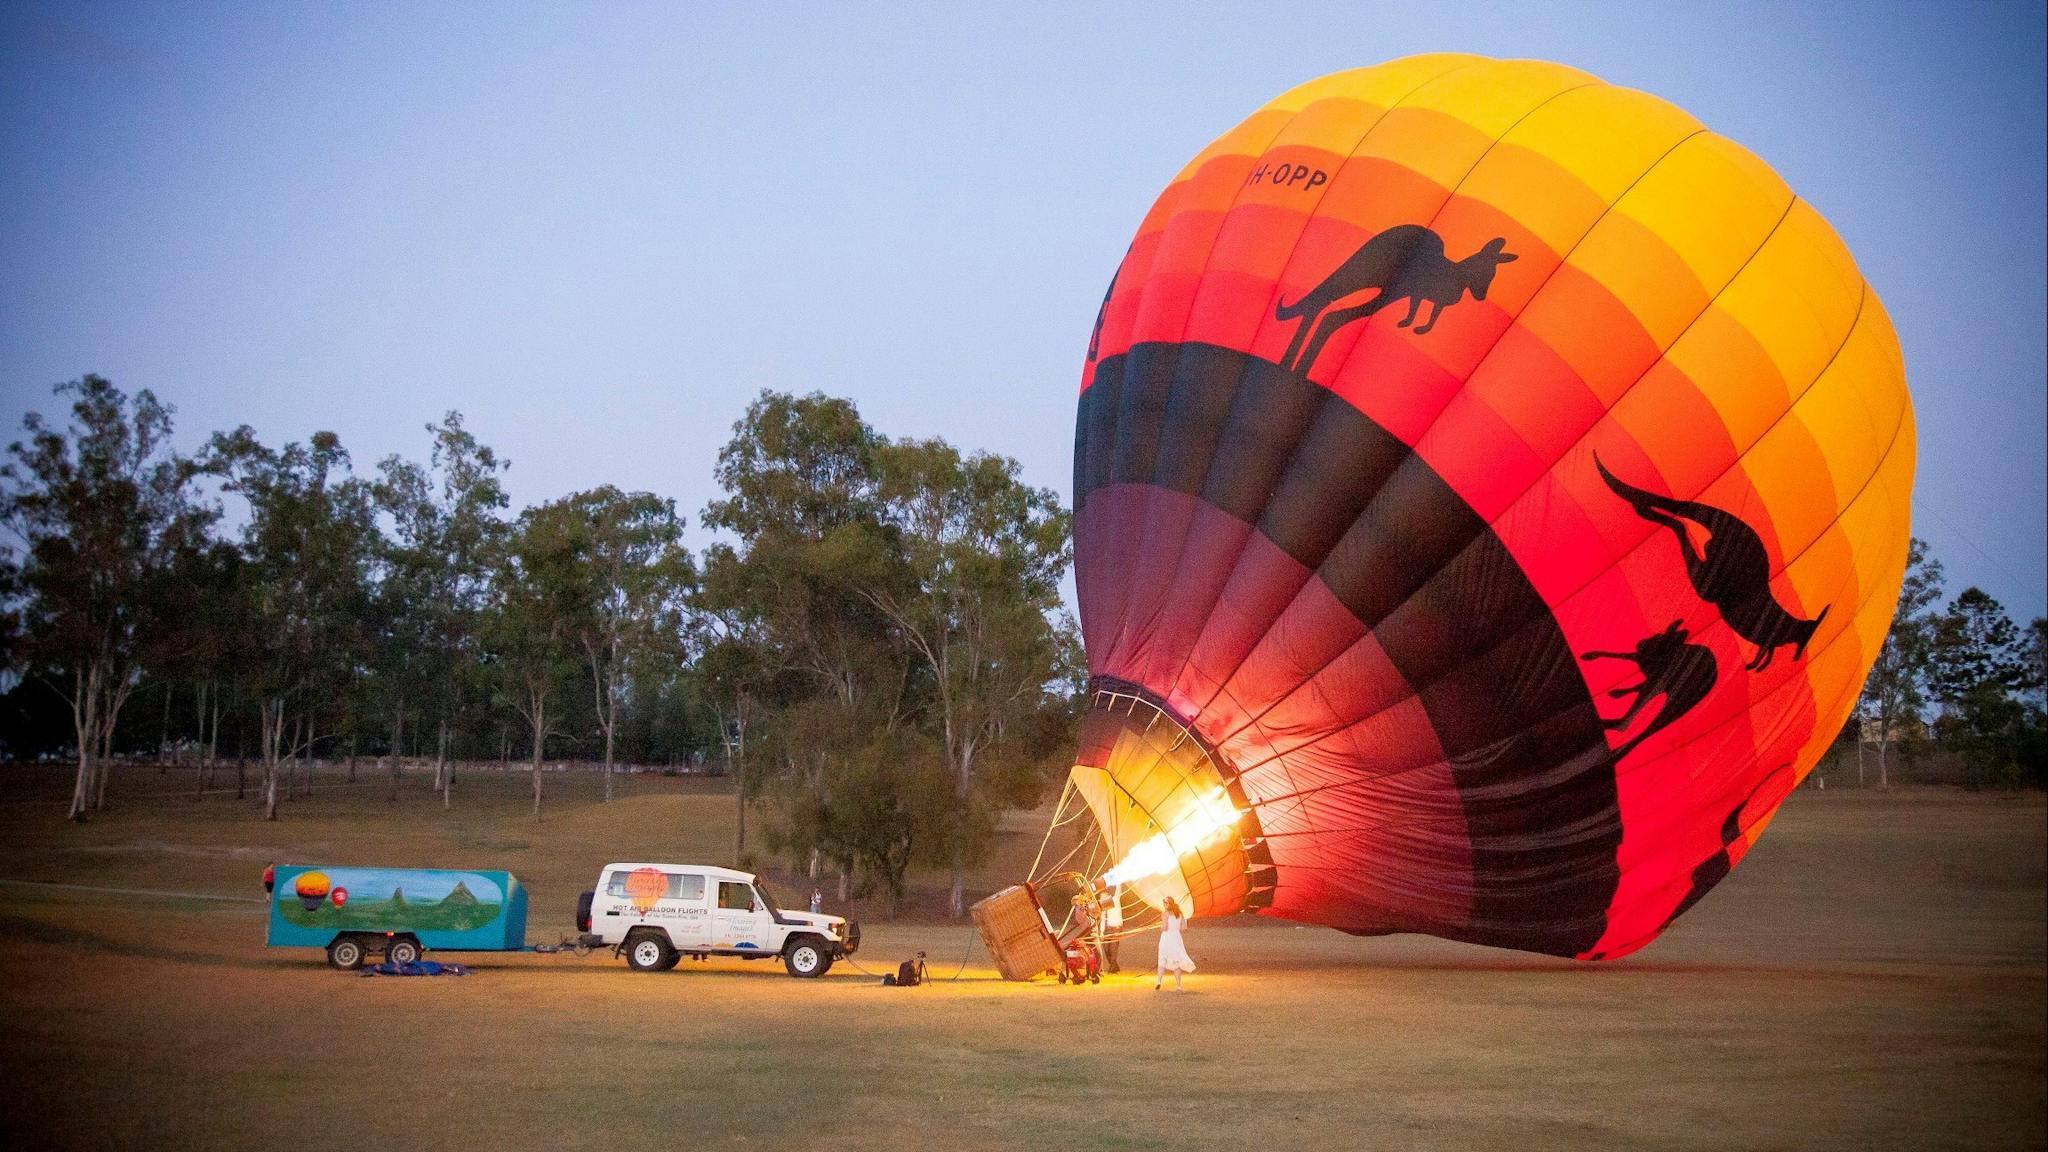 Brisbane hot balloon ride